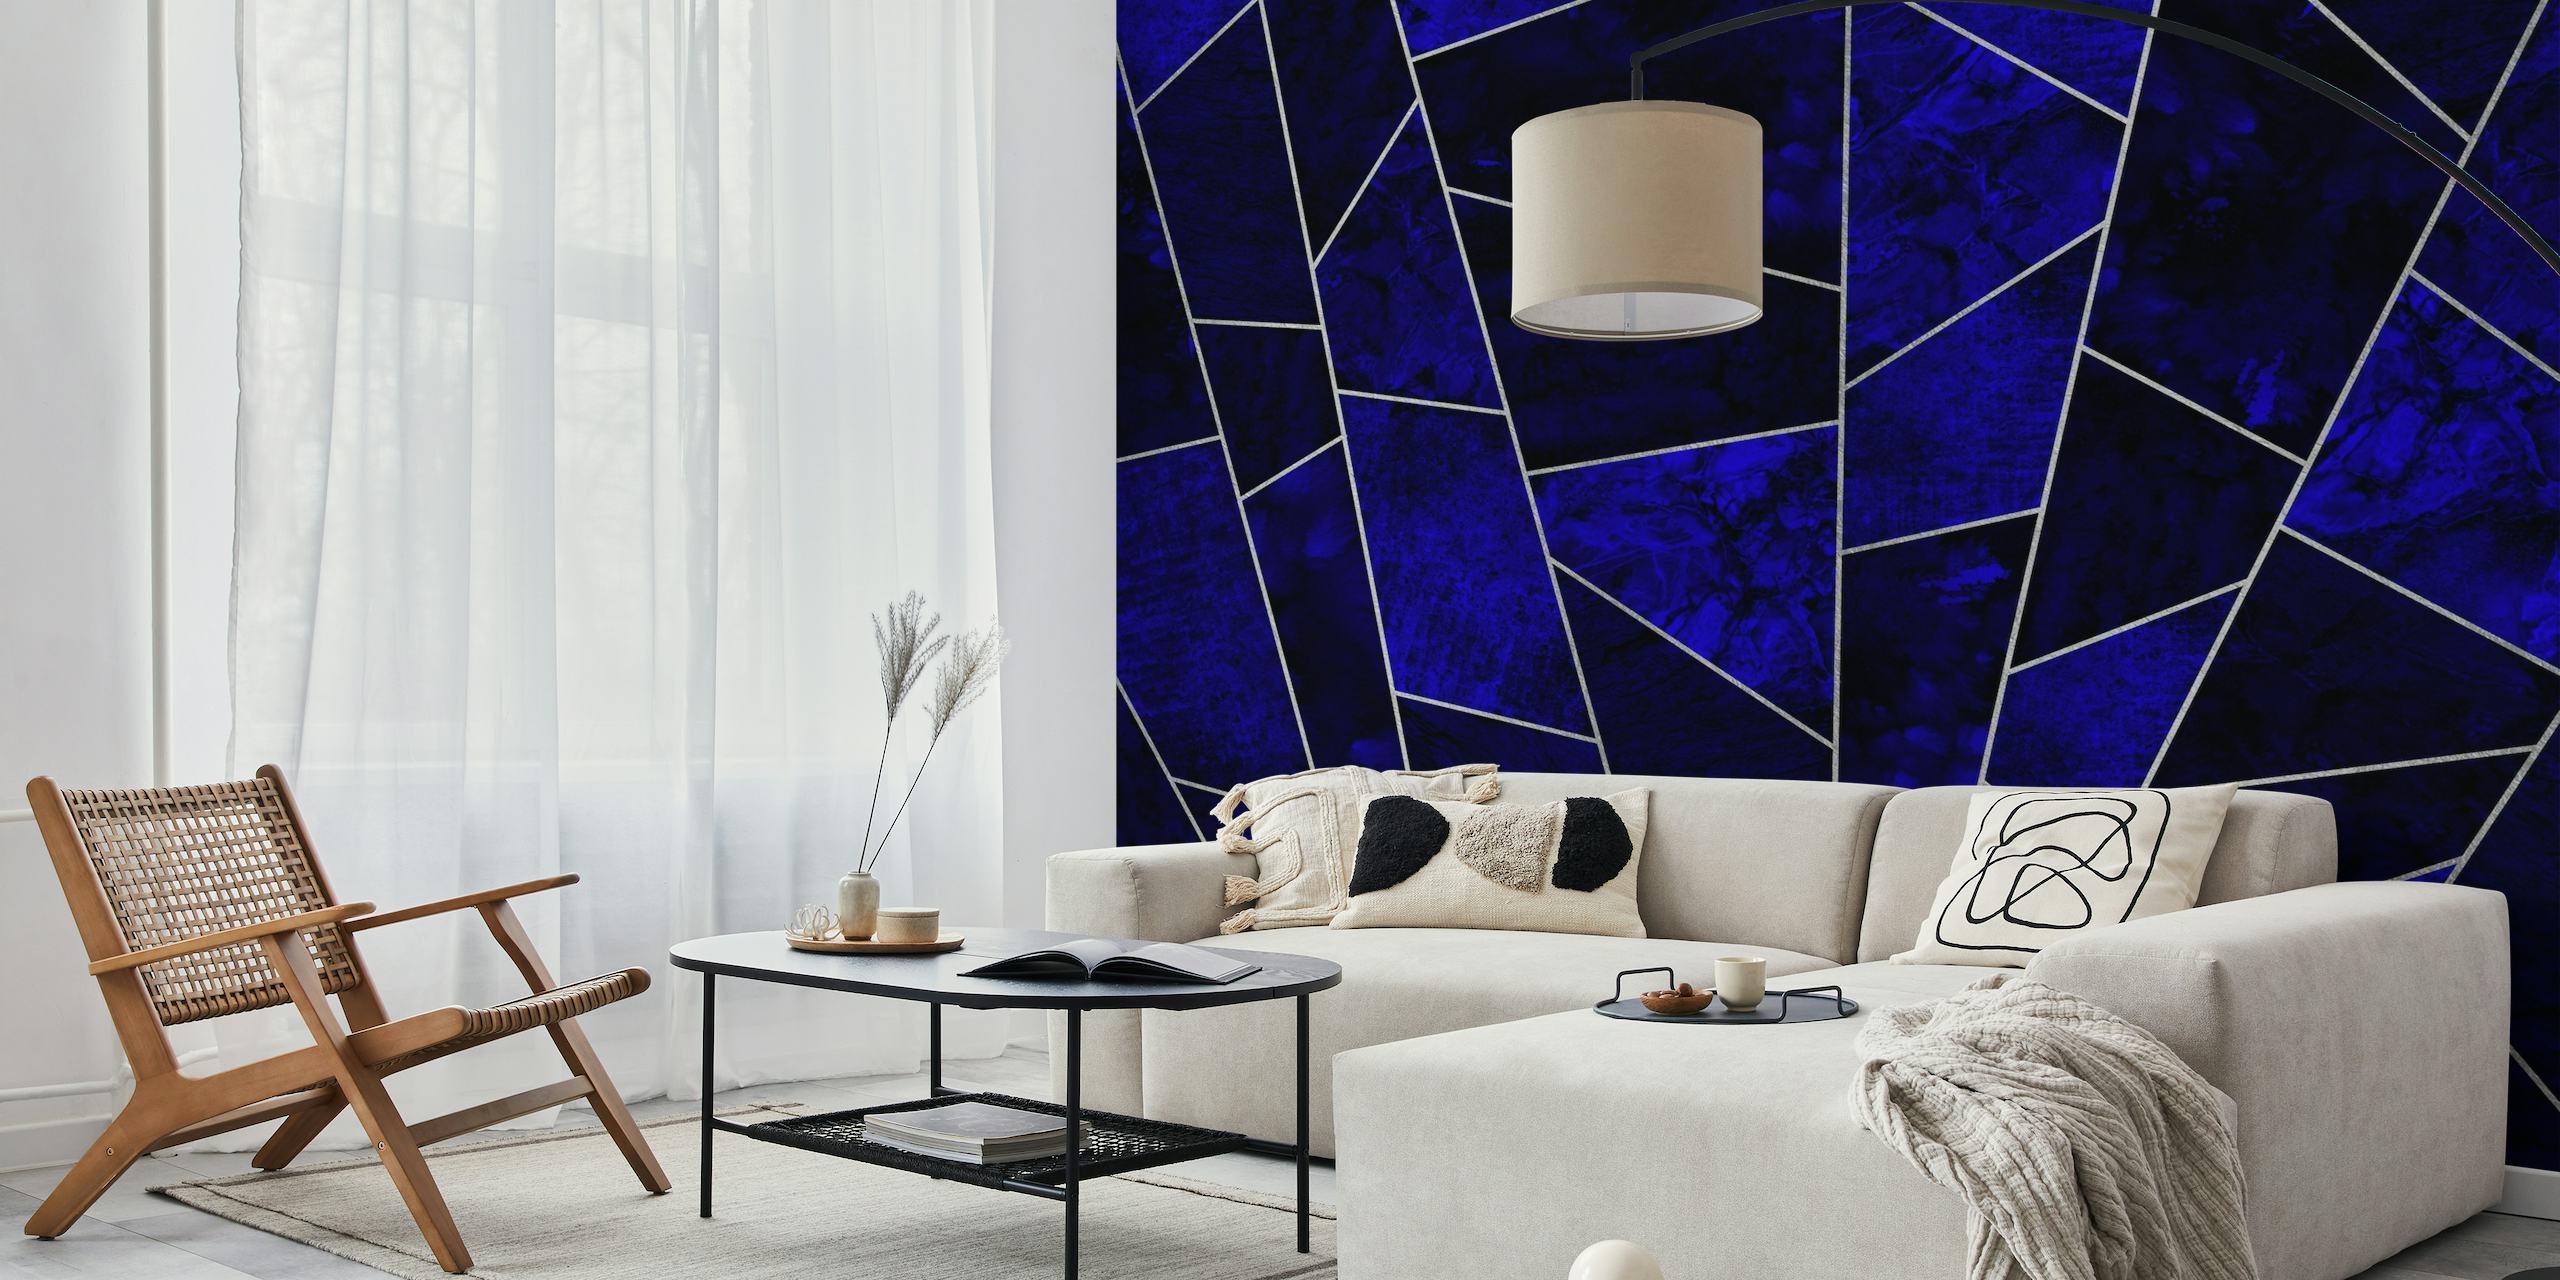 Elegant diepblauw saffier tegelpatroon met zilveren accenten muurschildering